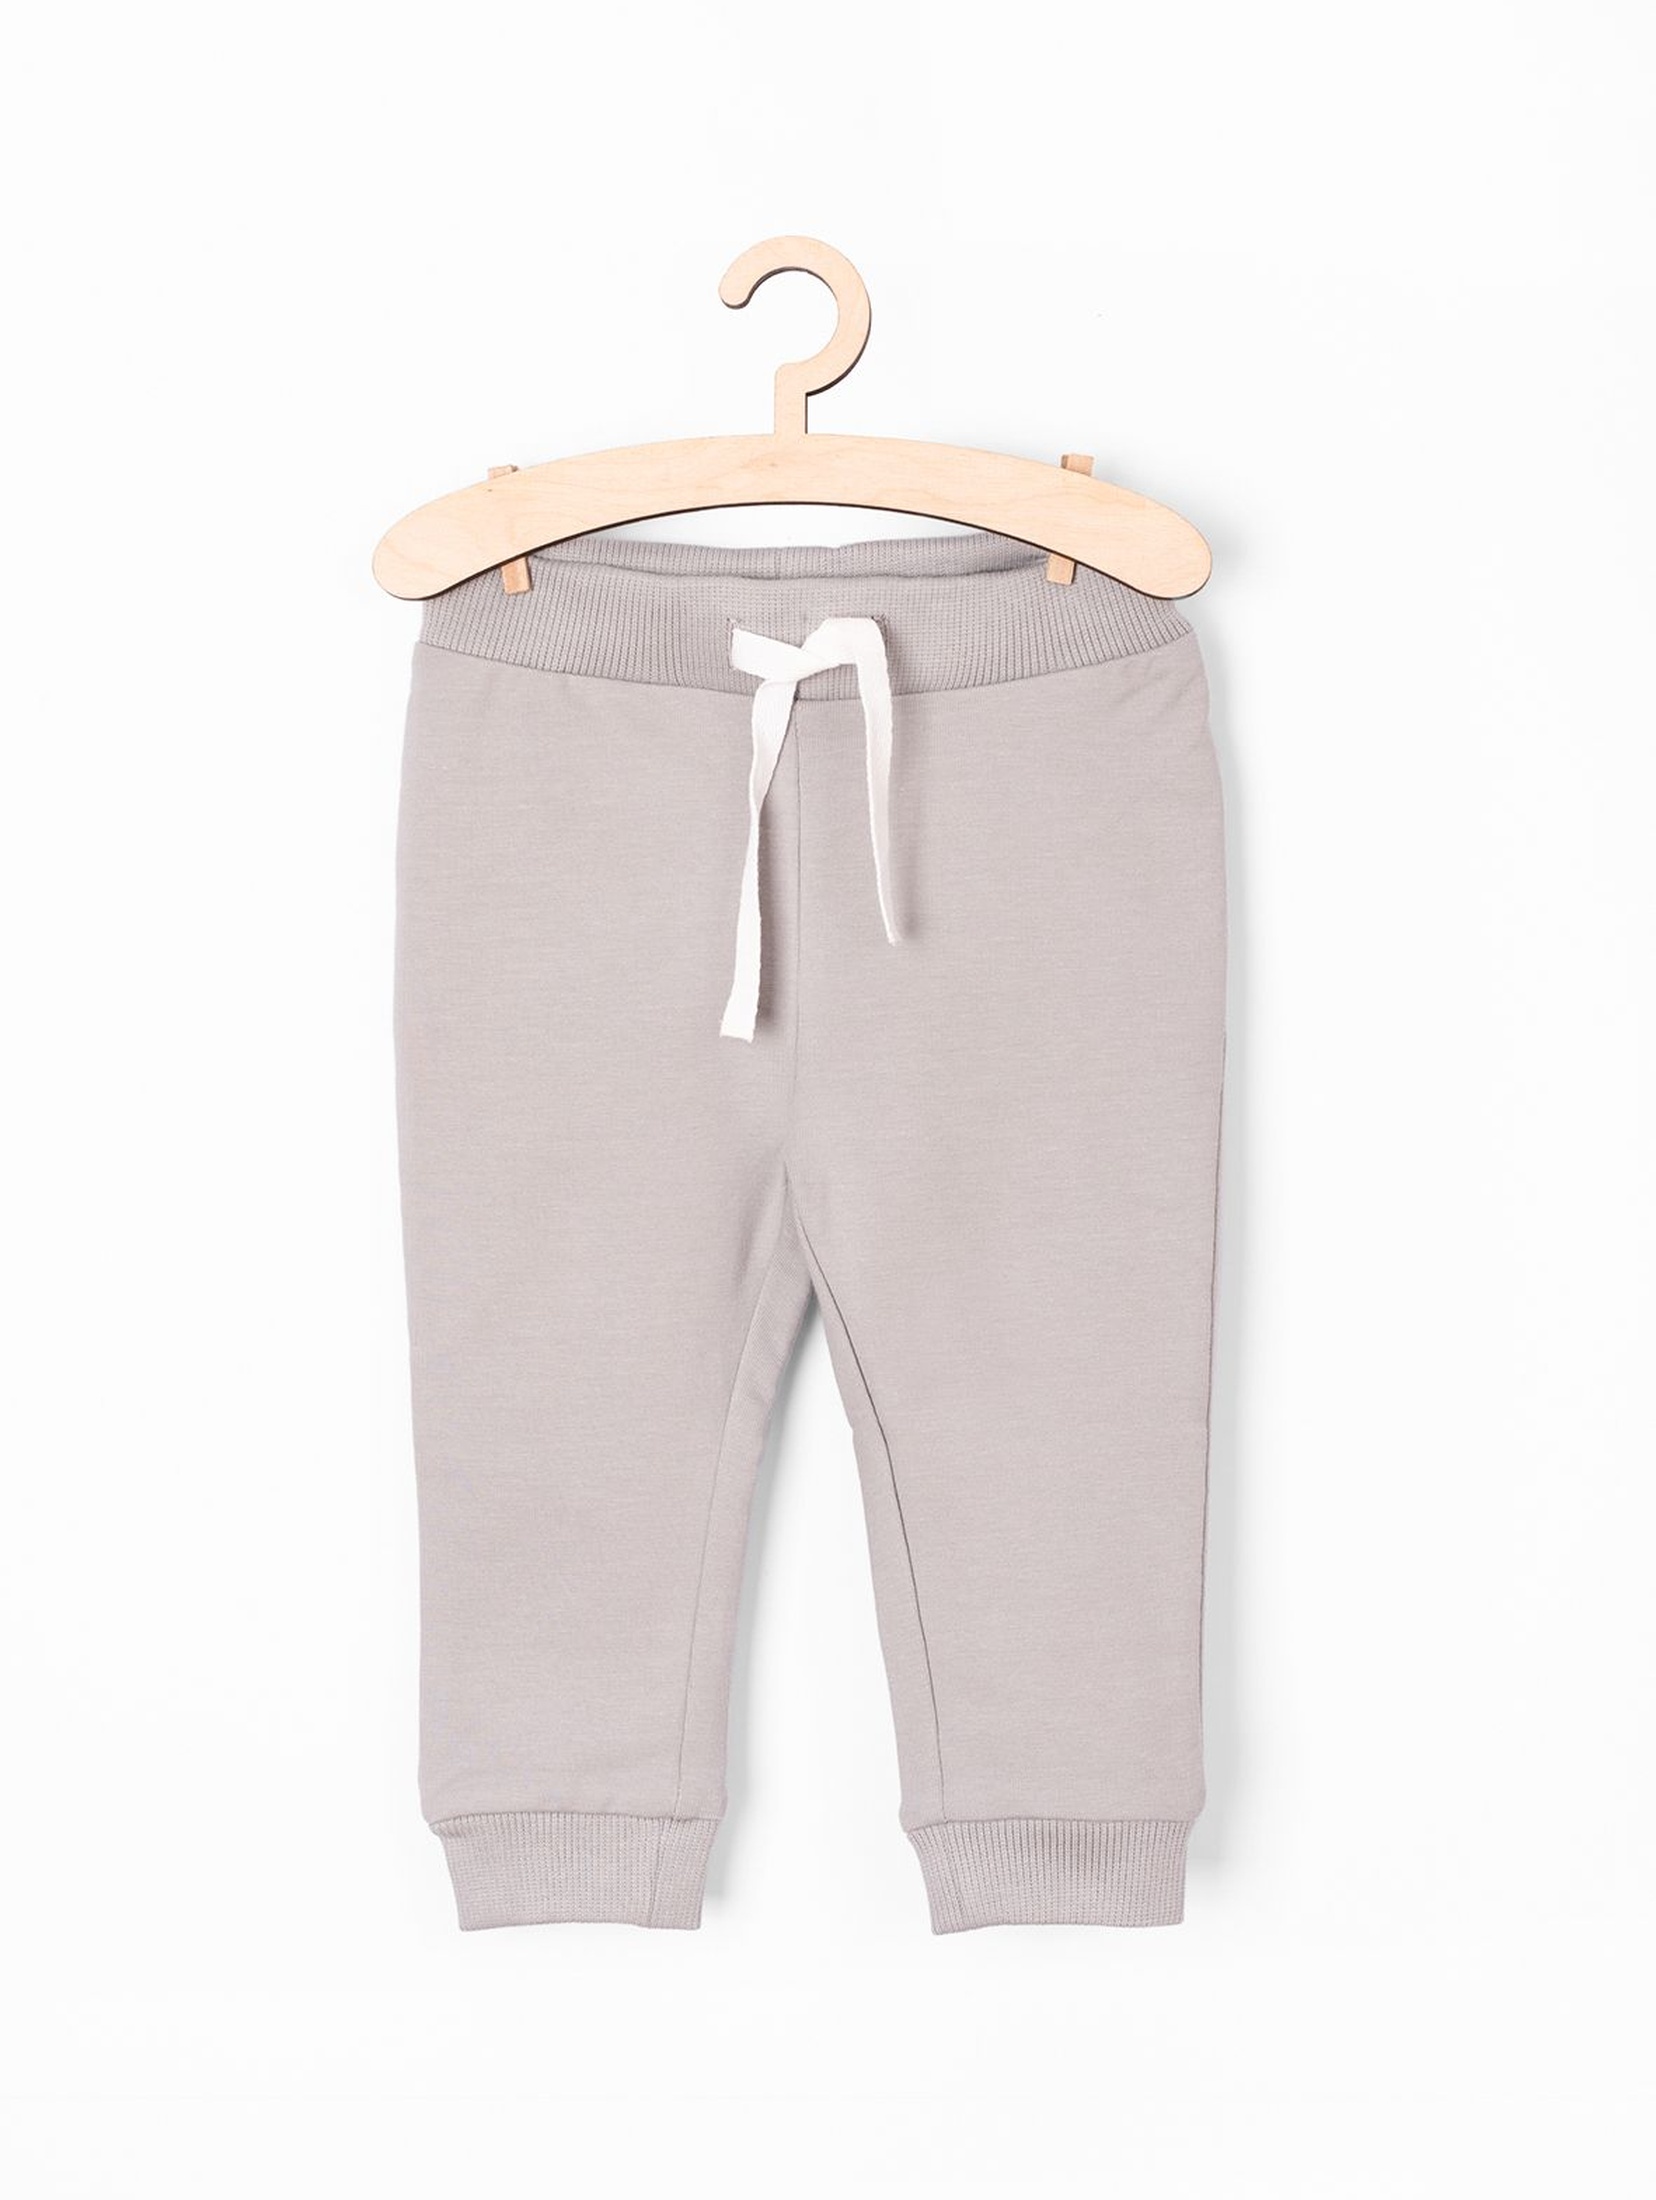 Szare spodnie dresowe dla niemowlaka - Organic Cotton